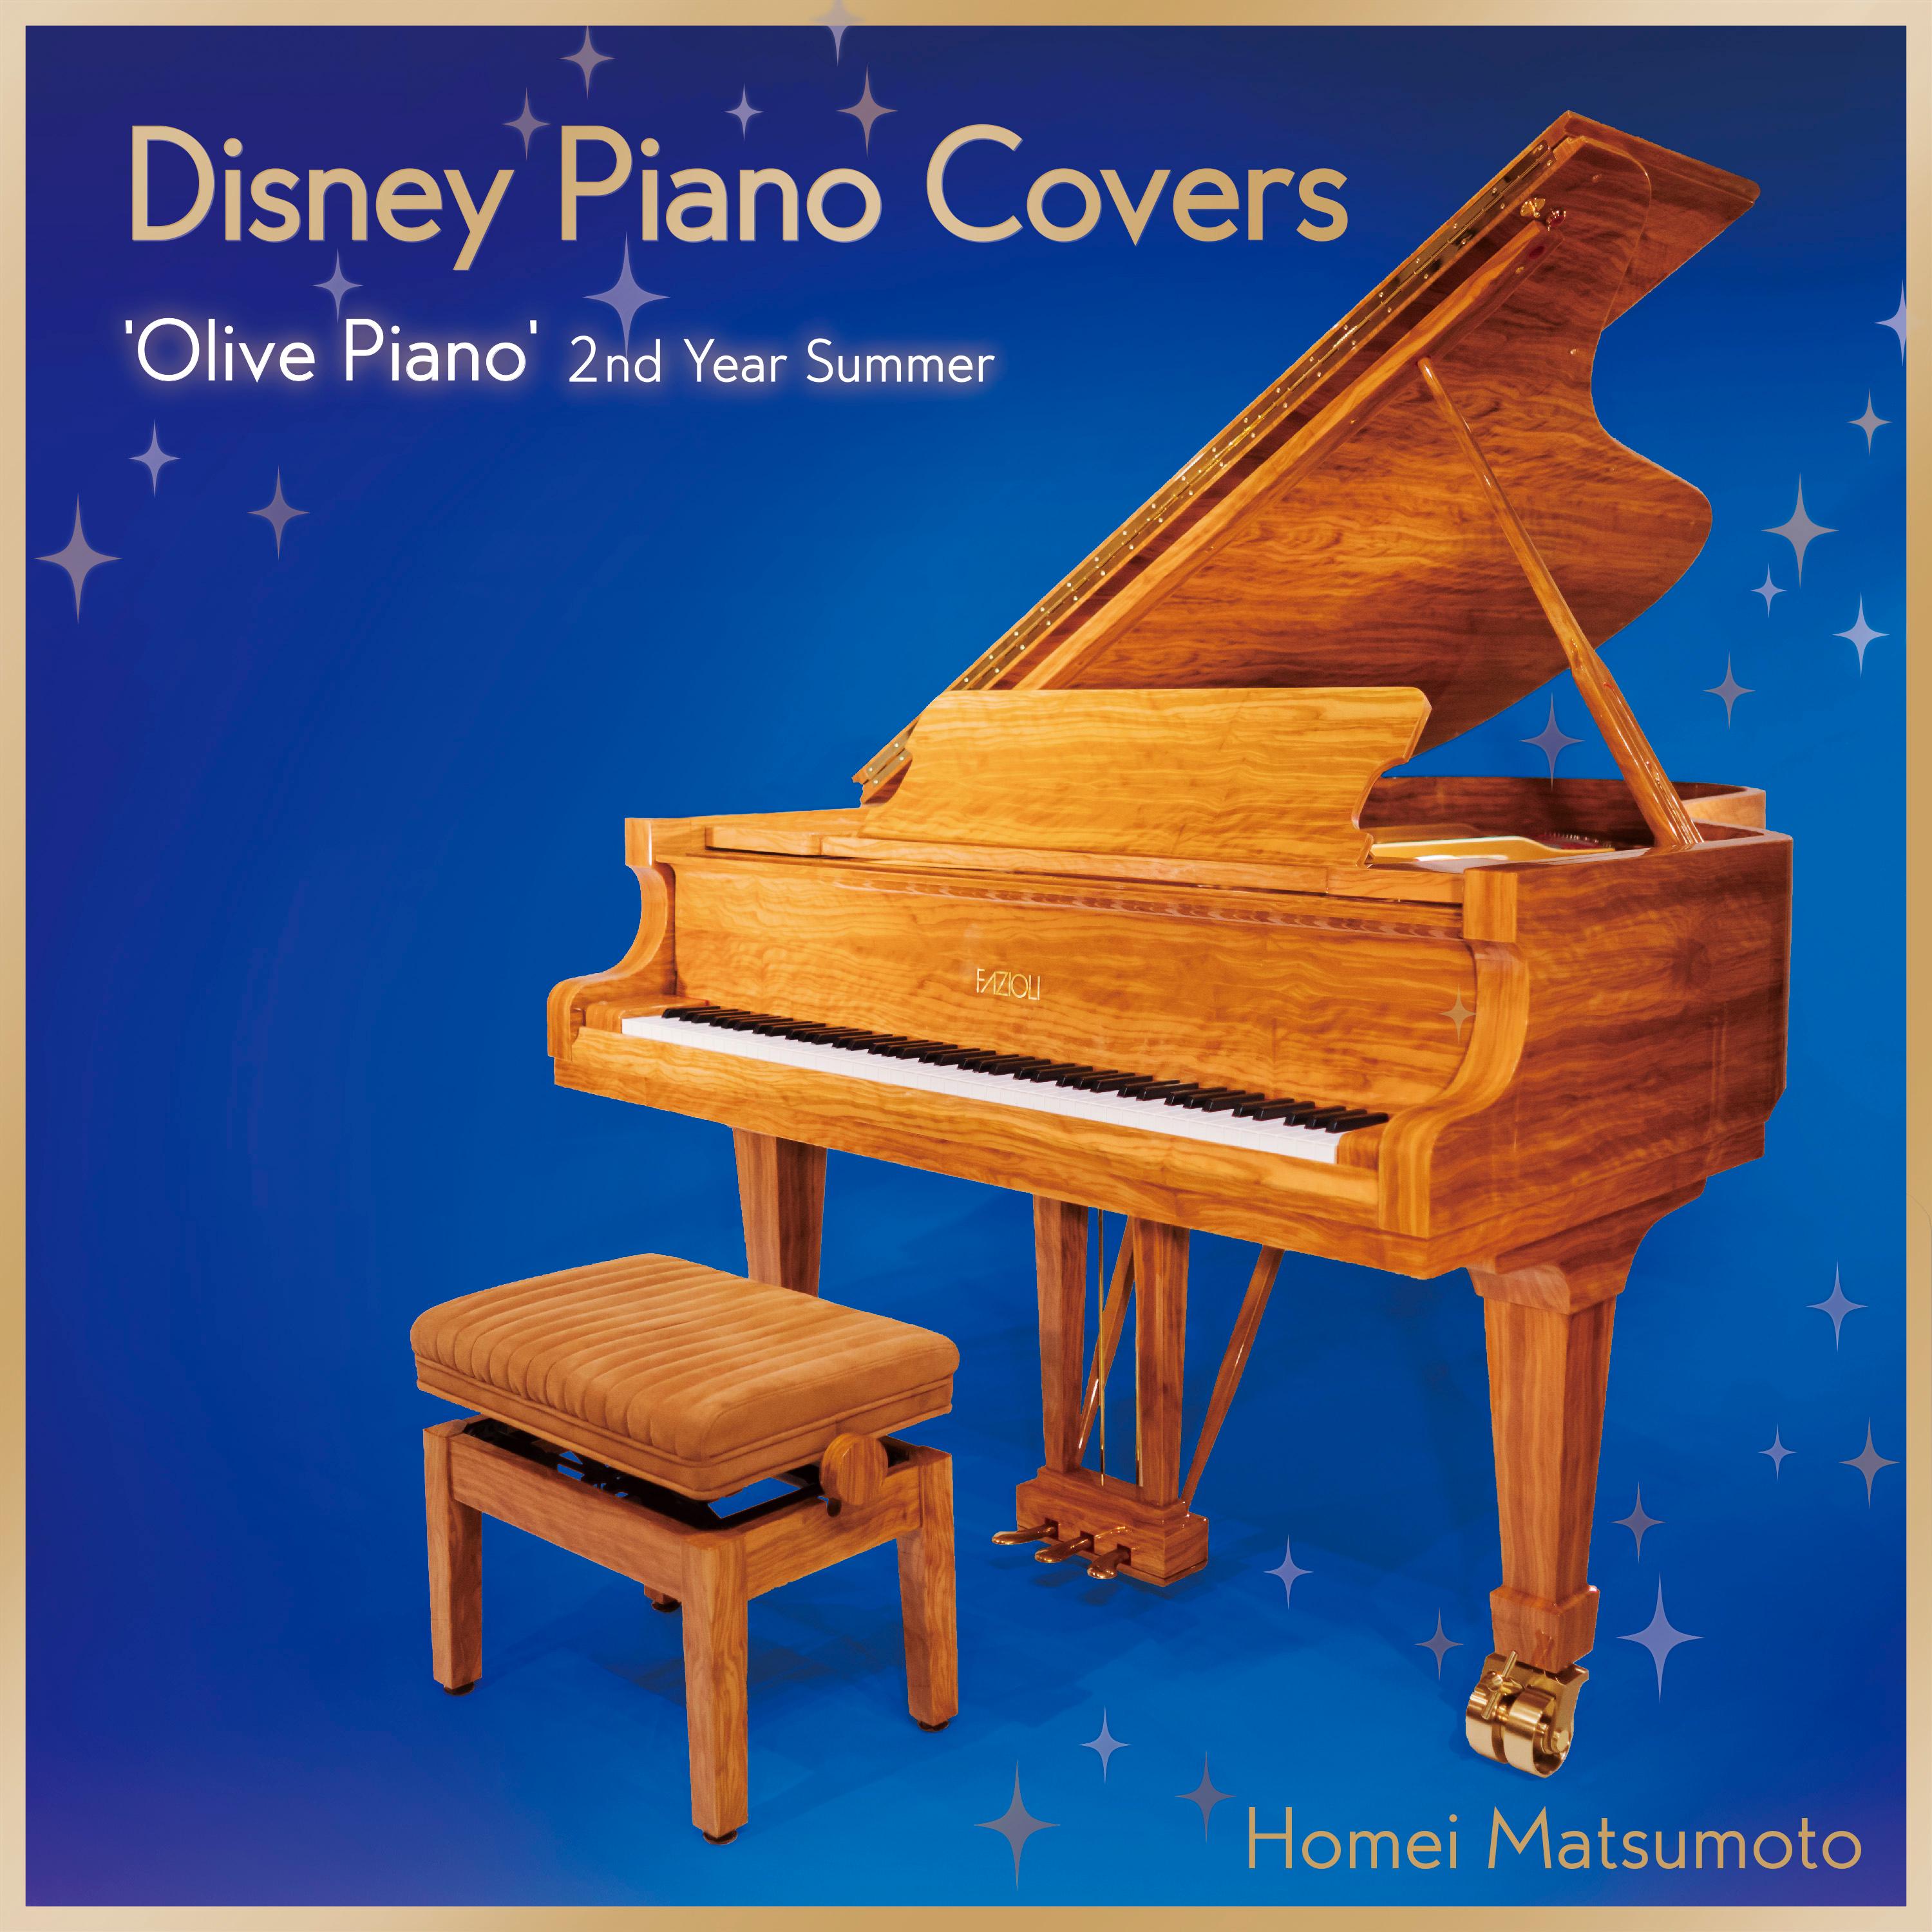 ディズニー・ピアノ・カヴァーズ -'Olive Piano' 2nd Year Summer